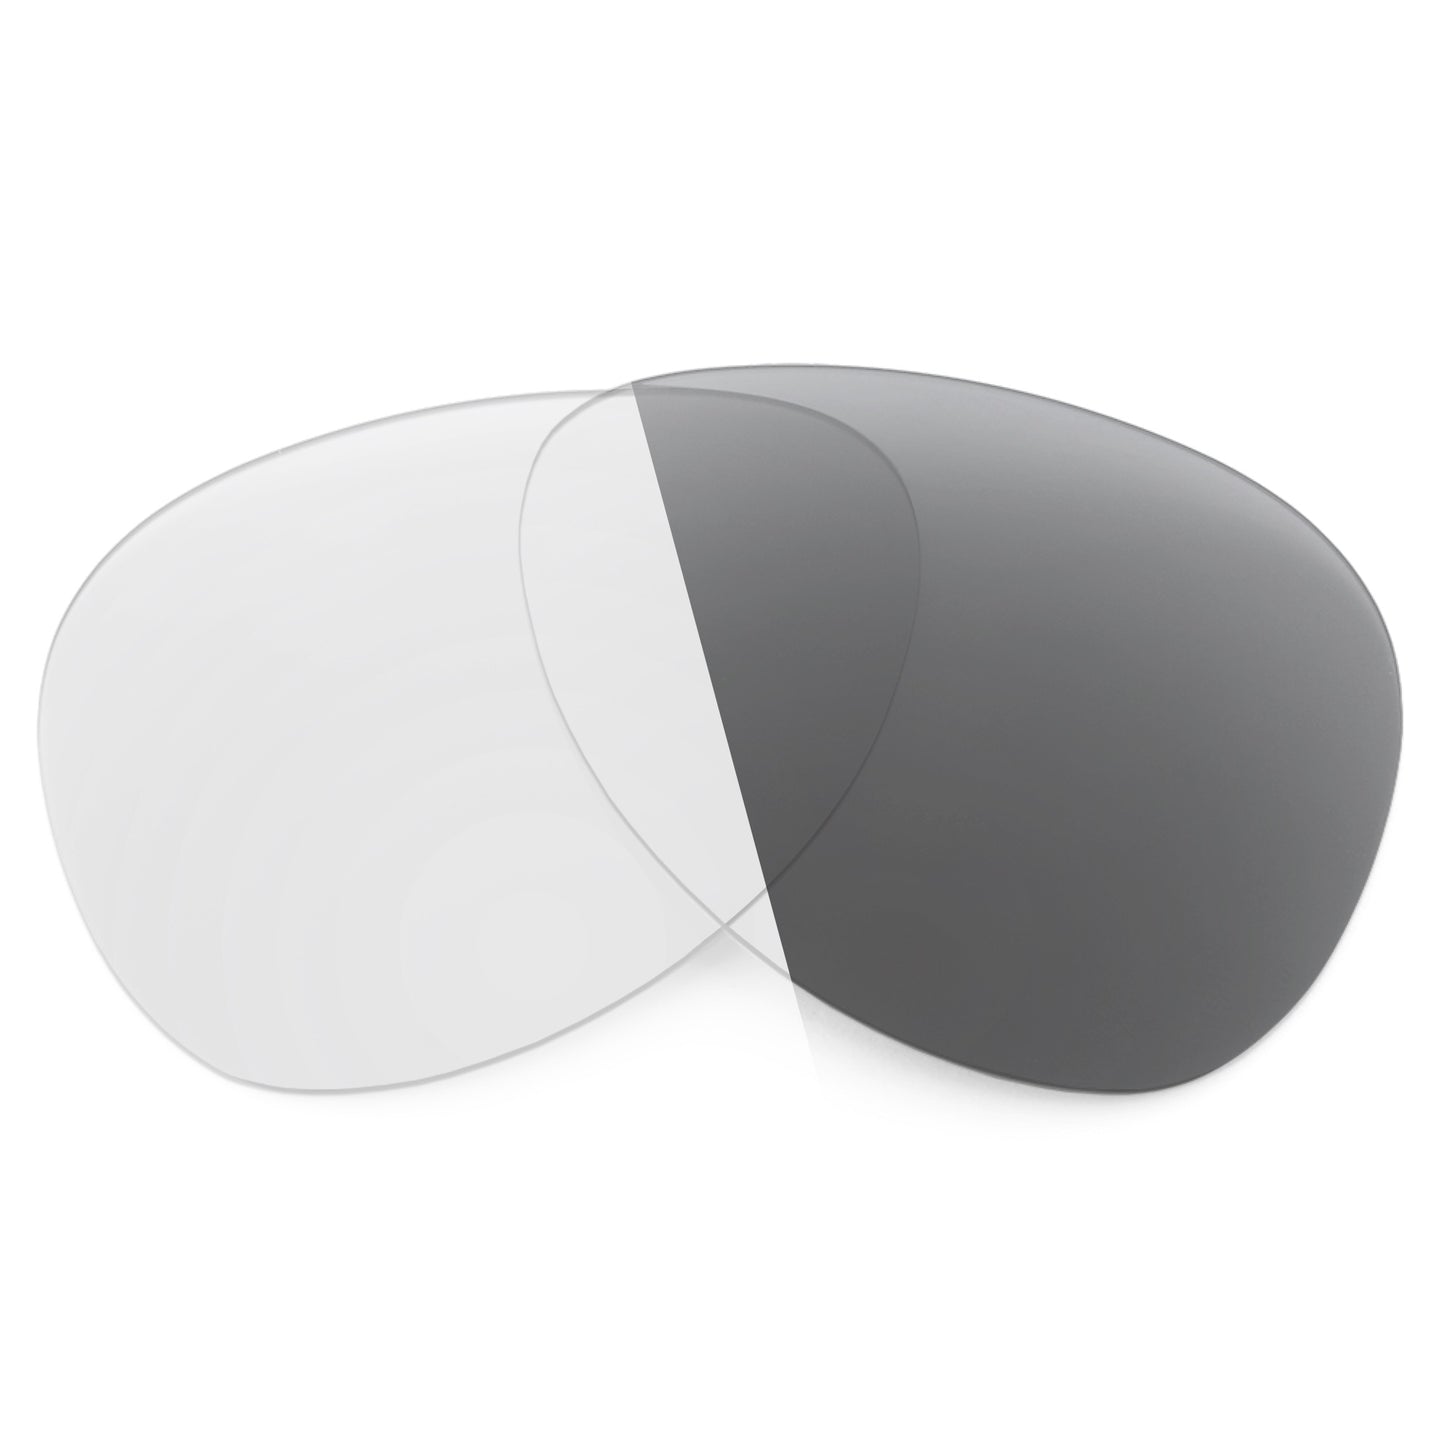 Revant replacement lenses for Oakley Break Point Non-Polarized Adapt Gray Photochromic